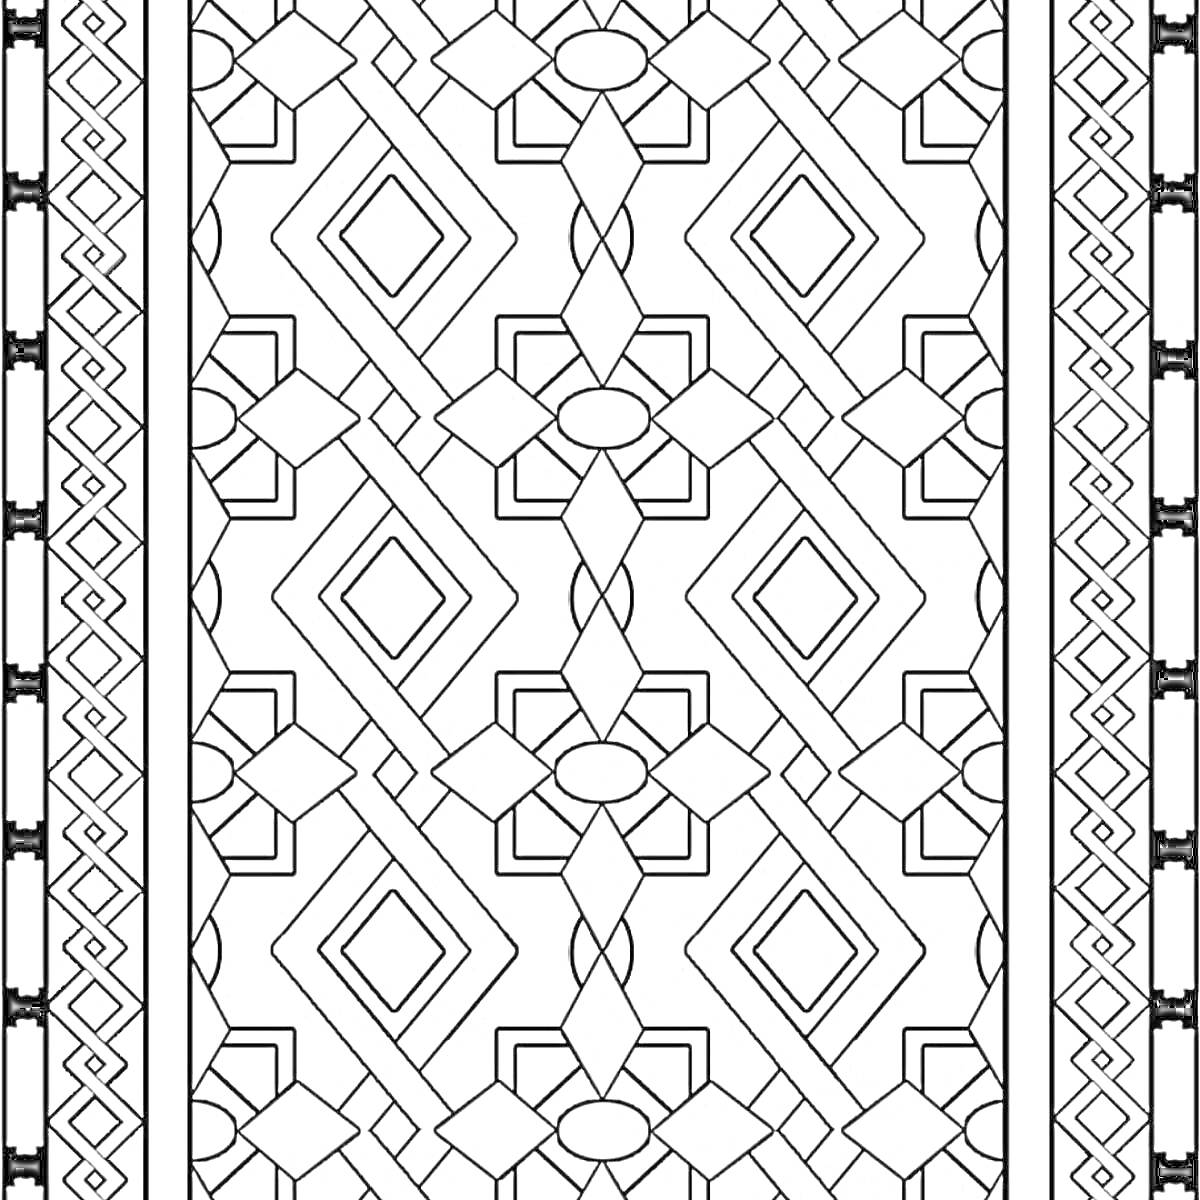 Раскраска Геометрический белорусский орнамент с ромбами, прямоугольниками, овалами и зубчатыми линиями по бокам